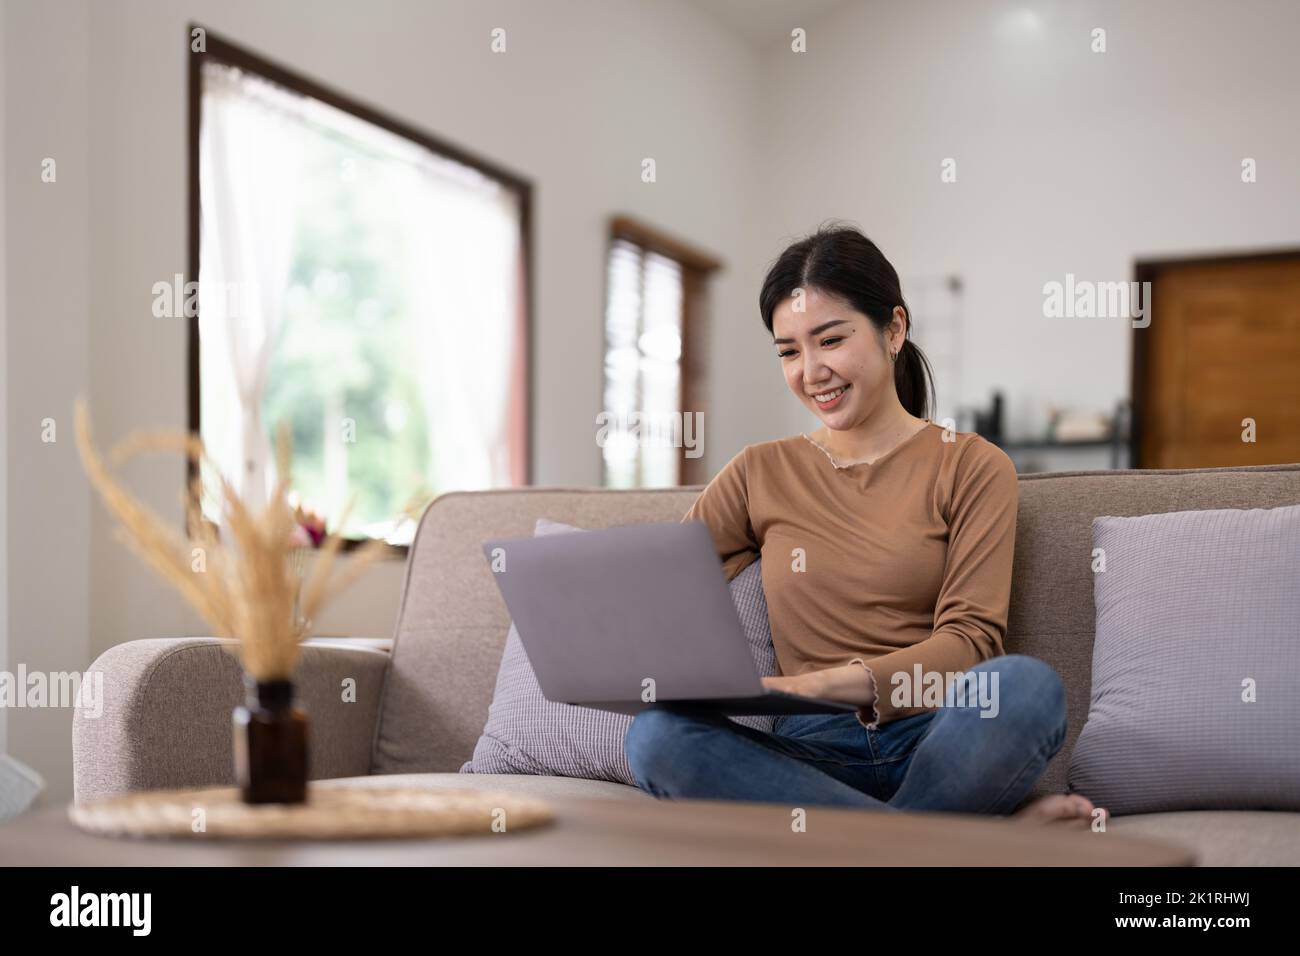 Jeune femme asiatique qui a une conversation en discutant avec un ordinateur portable à la maison. Travail à domicile, visioconférence, appel vidéo de réunion en ligne, virtuel Banque D'Images